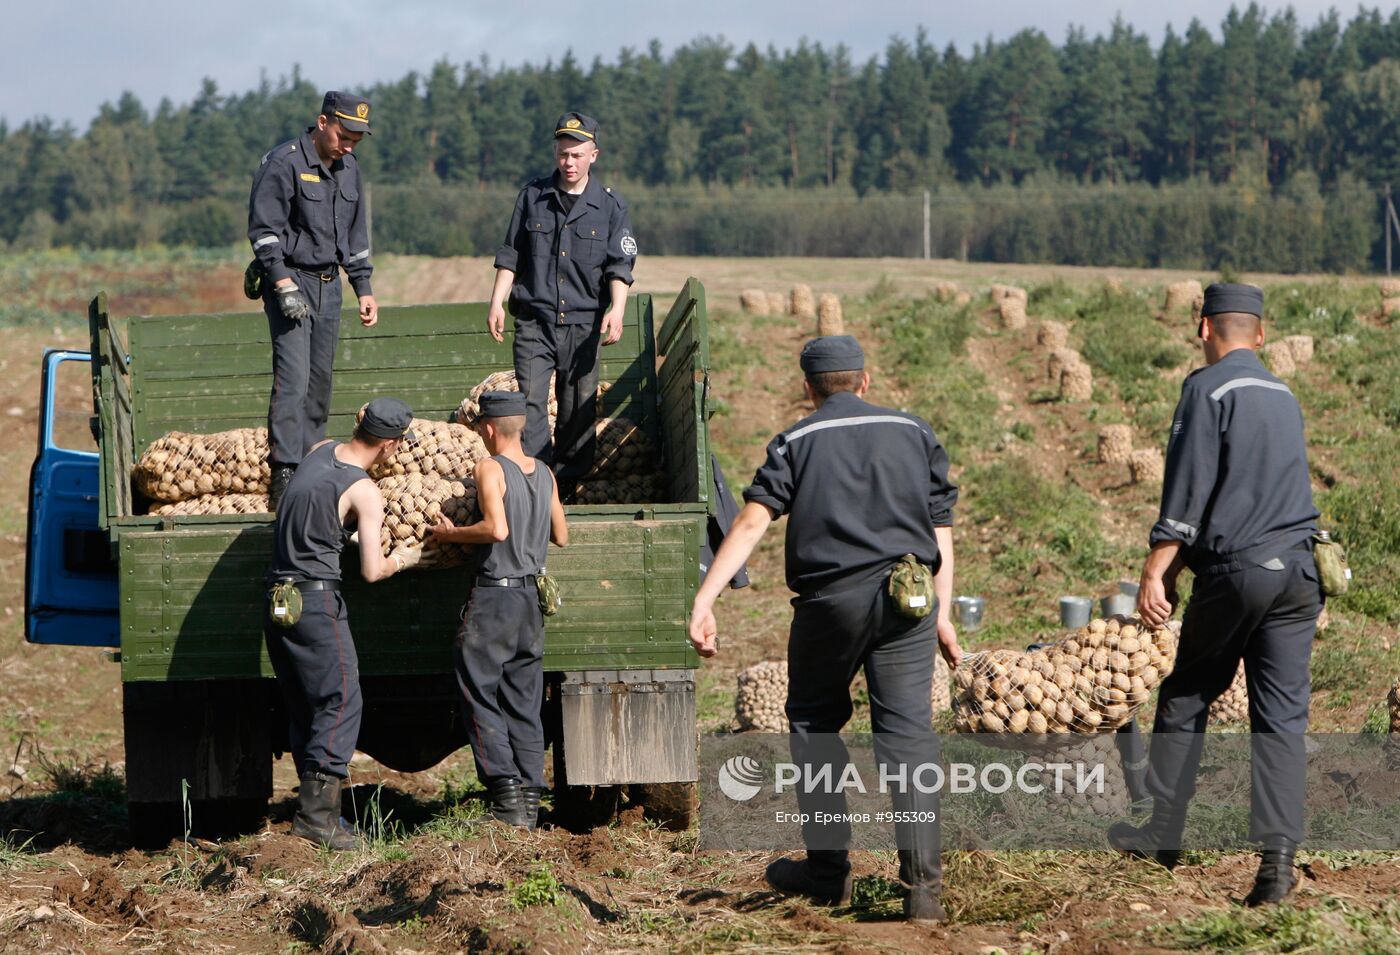 Уборка картофеля на полях Белоруссии